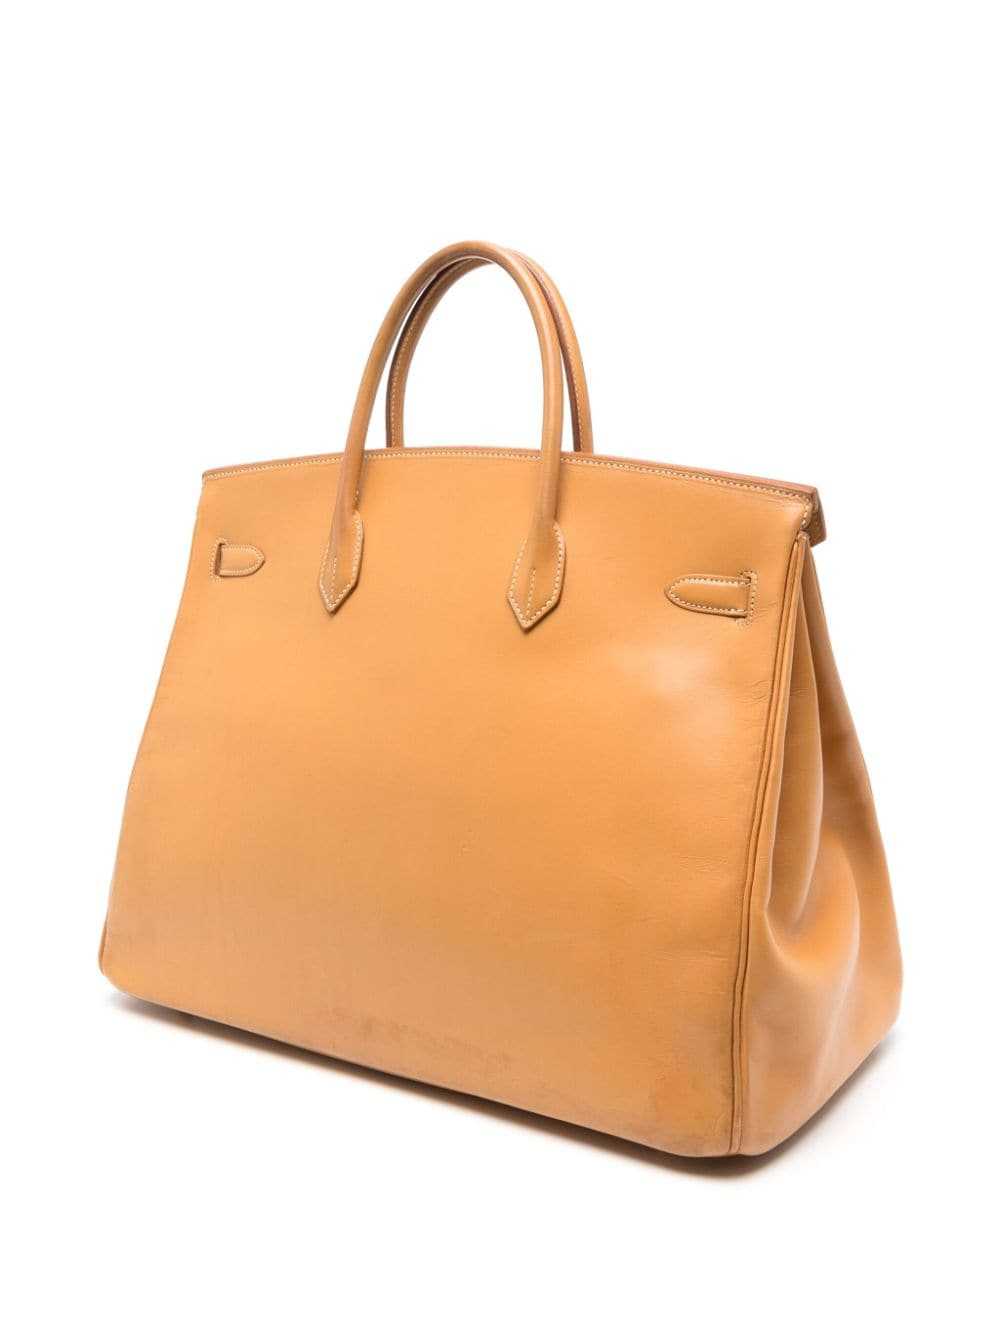 Hermès Pre-Owned Birkin 40 handbag - Brown - image 3